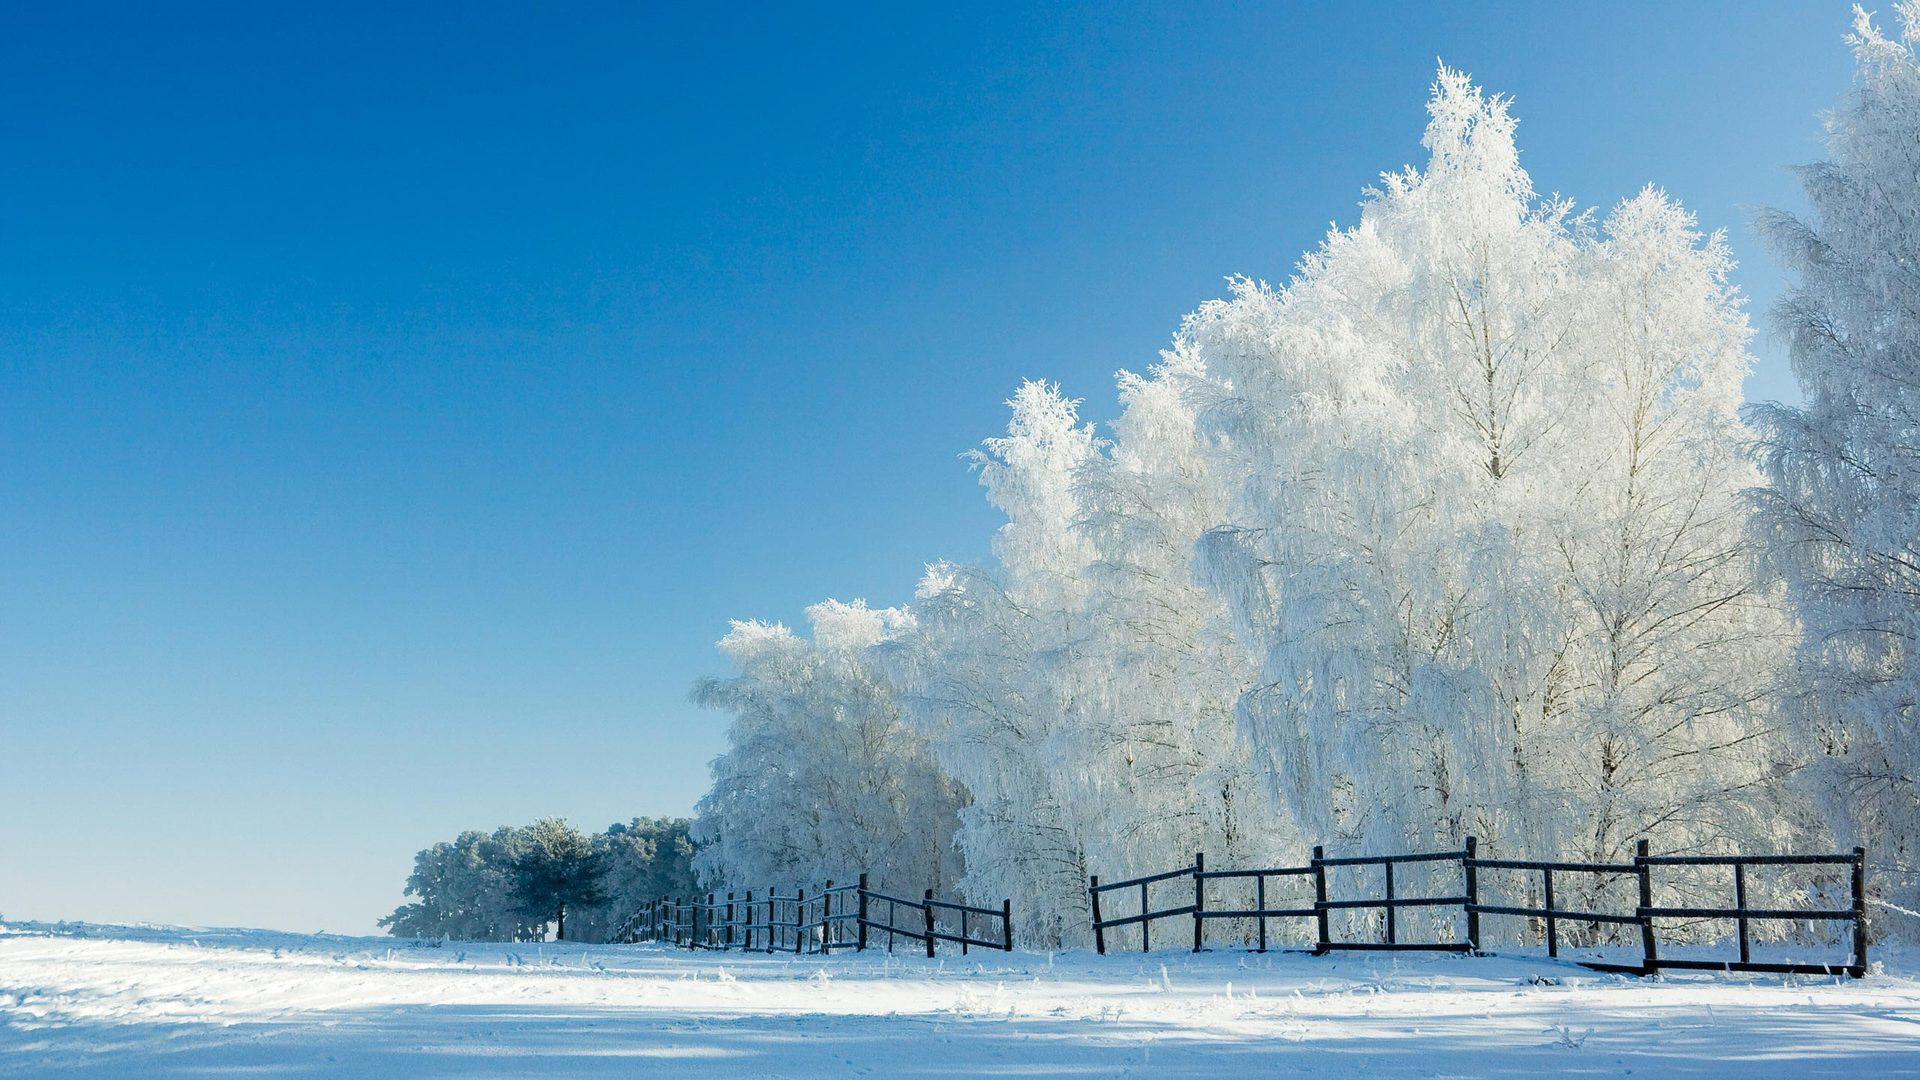 美丽雪景栅栏风景桌面壁纸